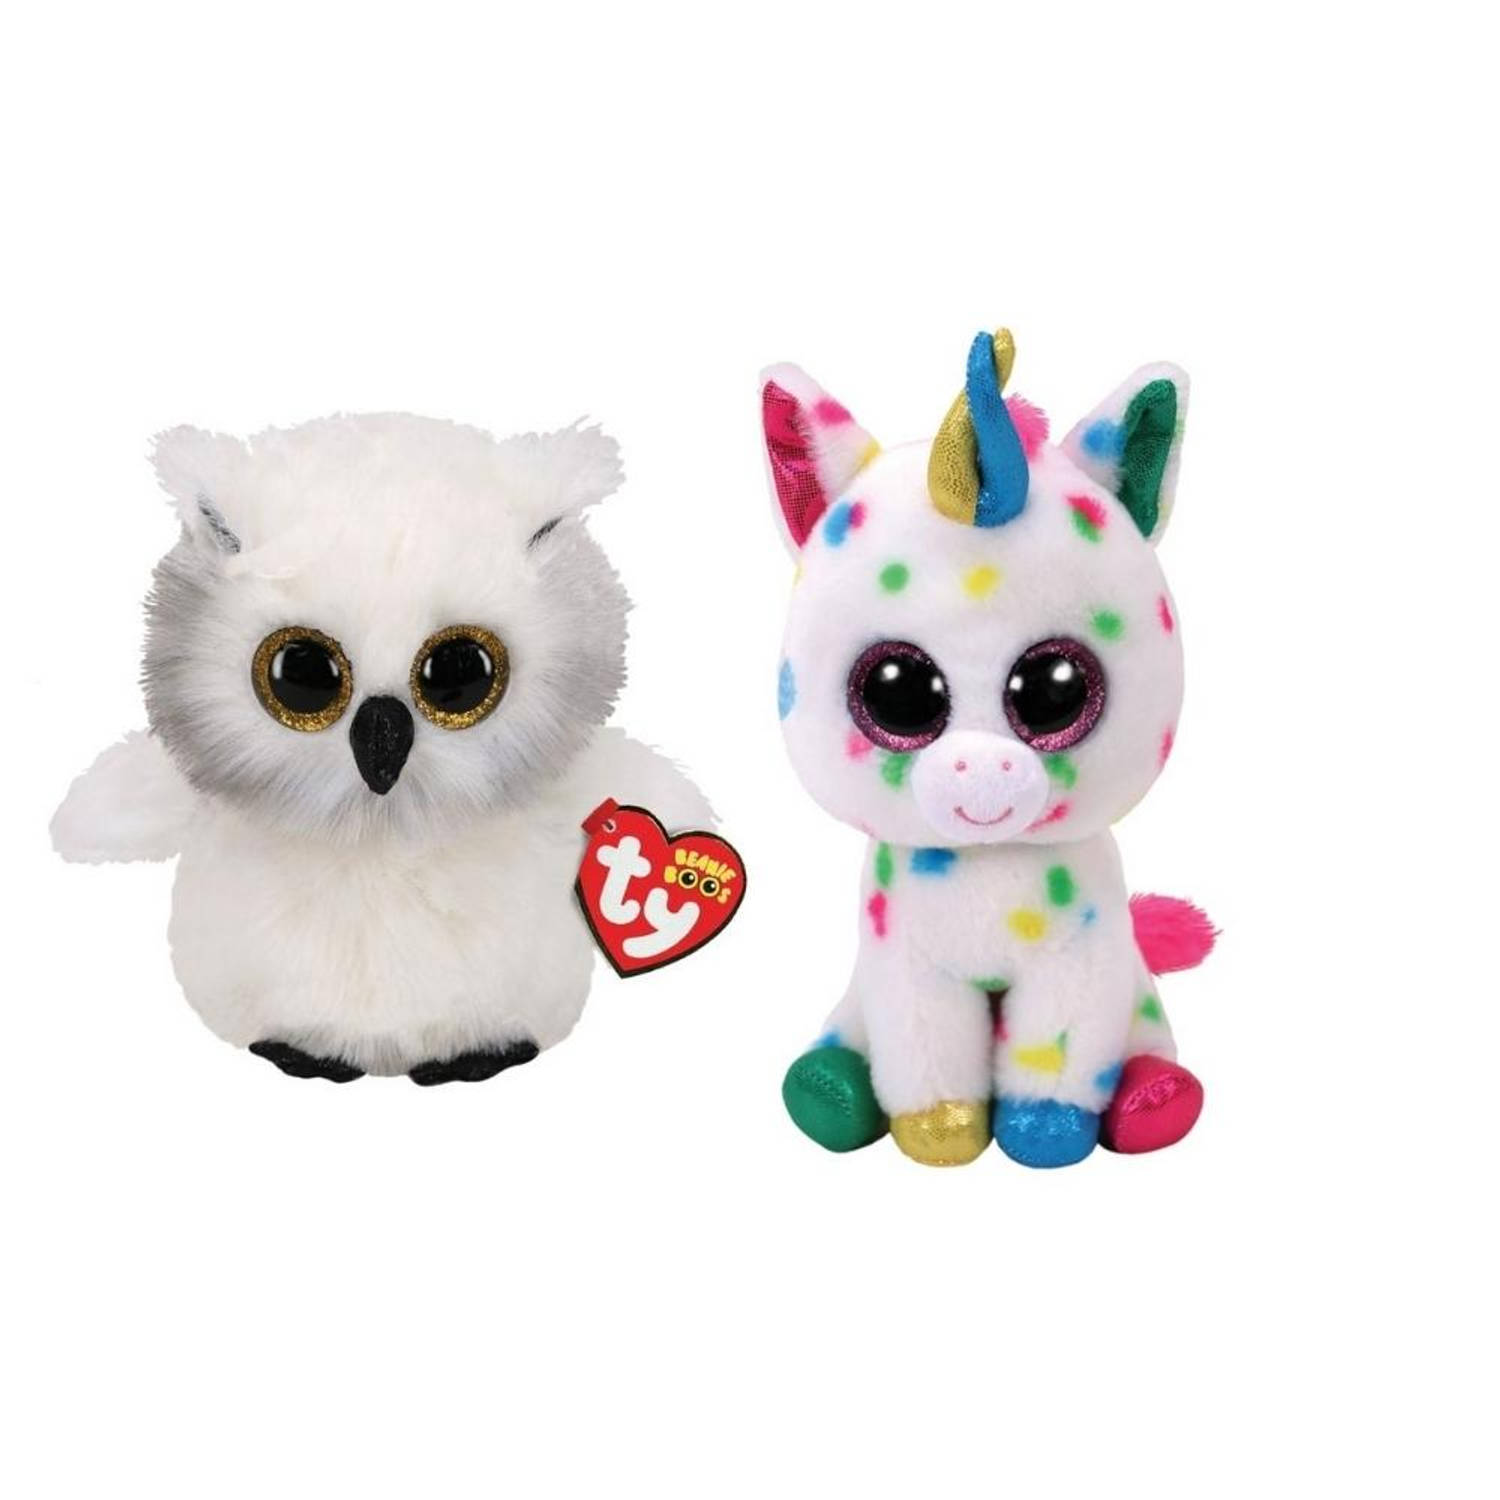 Ty - Knuffel - Beanie Boo's - Ausitin Owl & Harmonie Unicorn